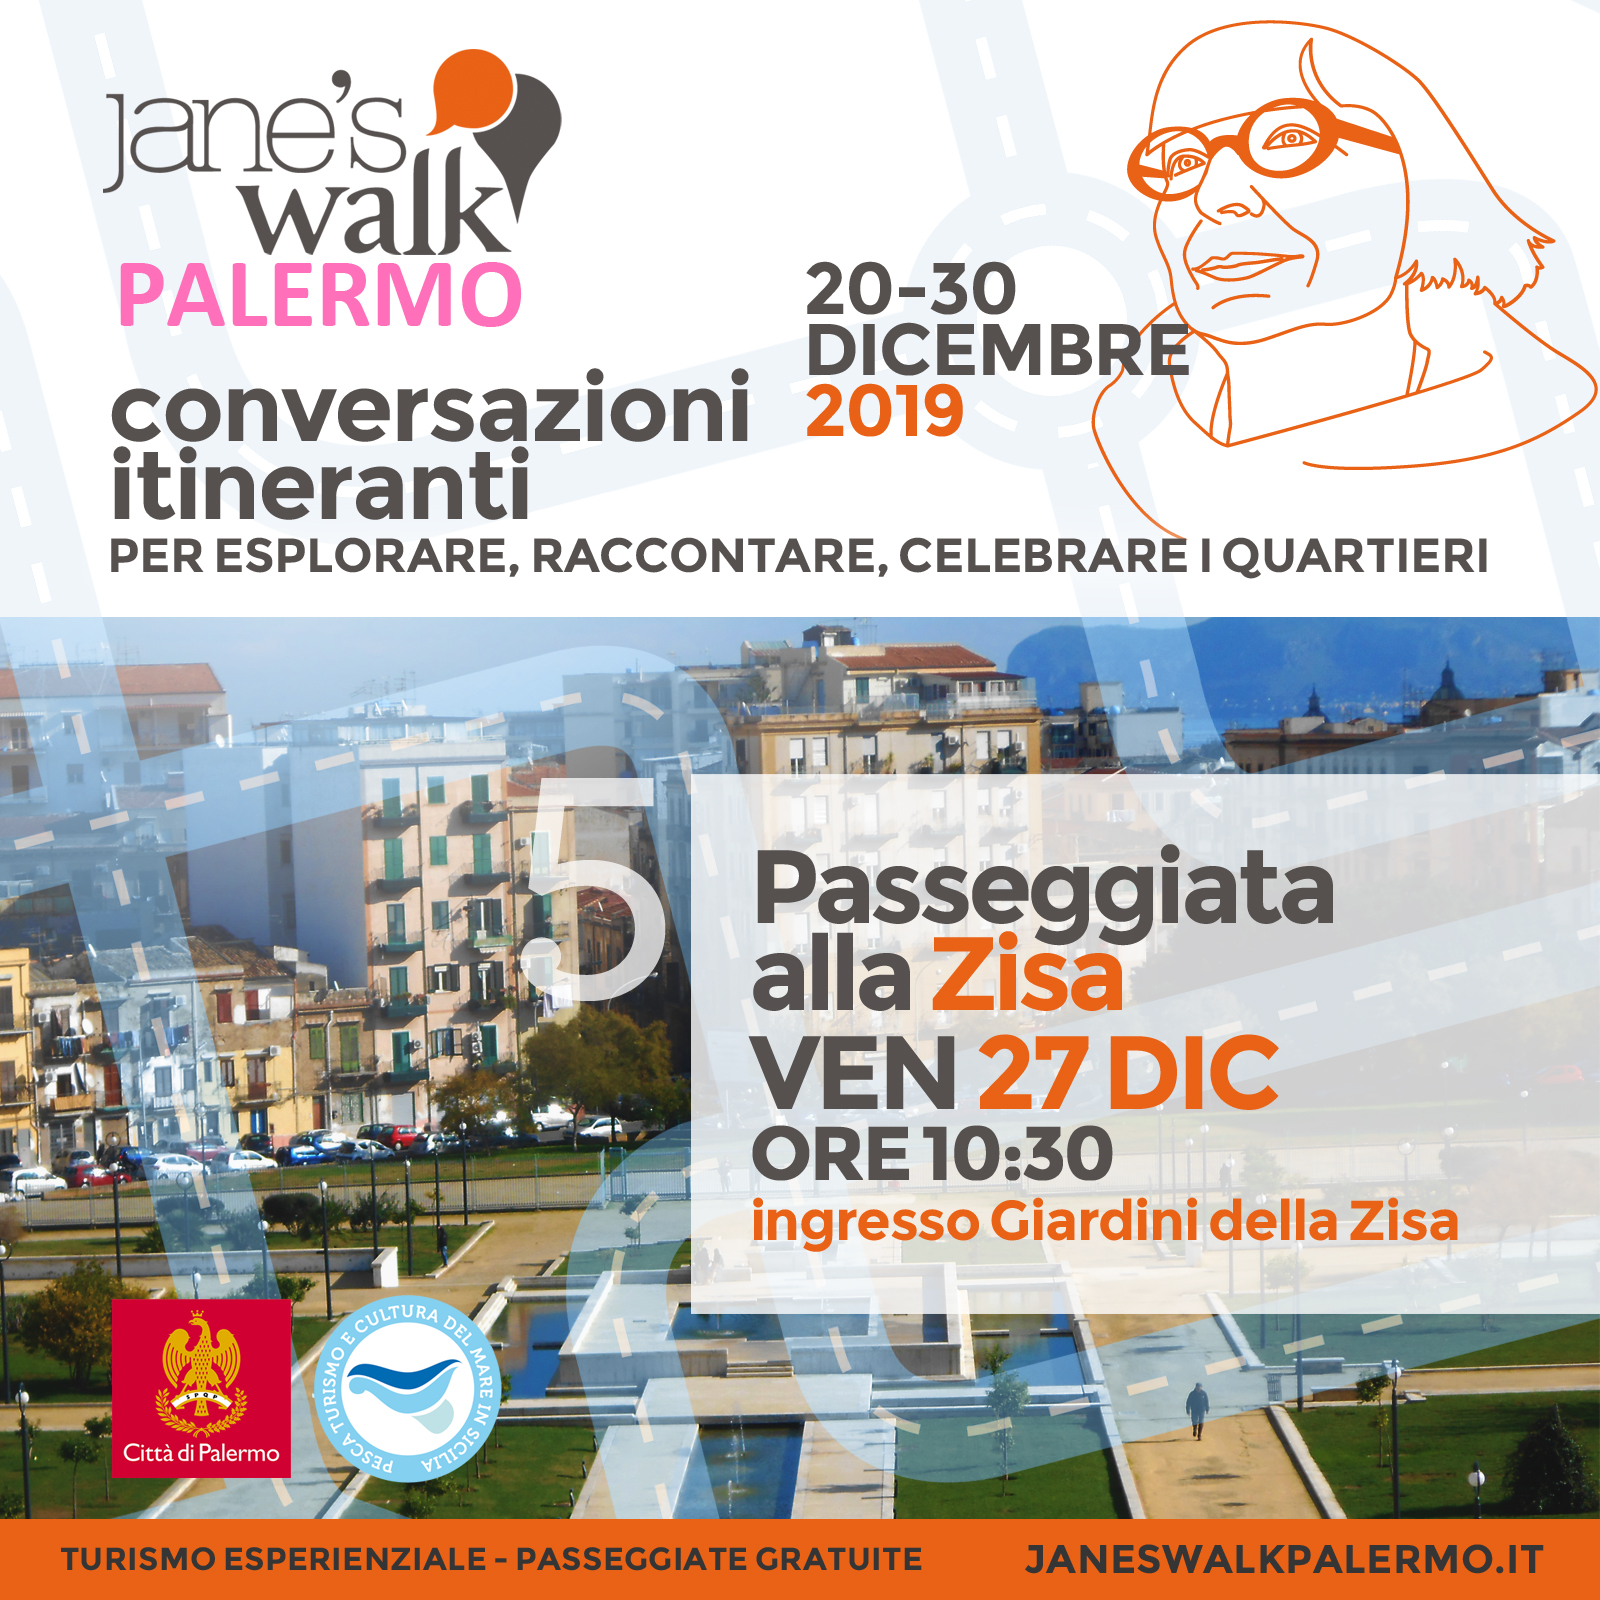 Jane's Walk Palermo - Passeggiata alla Zisa